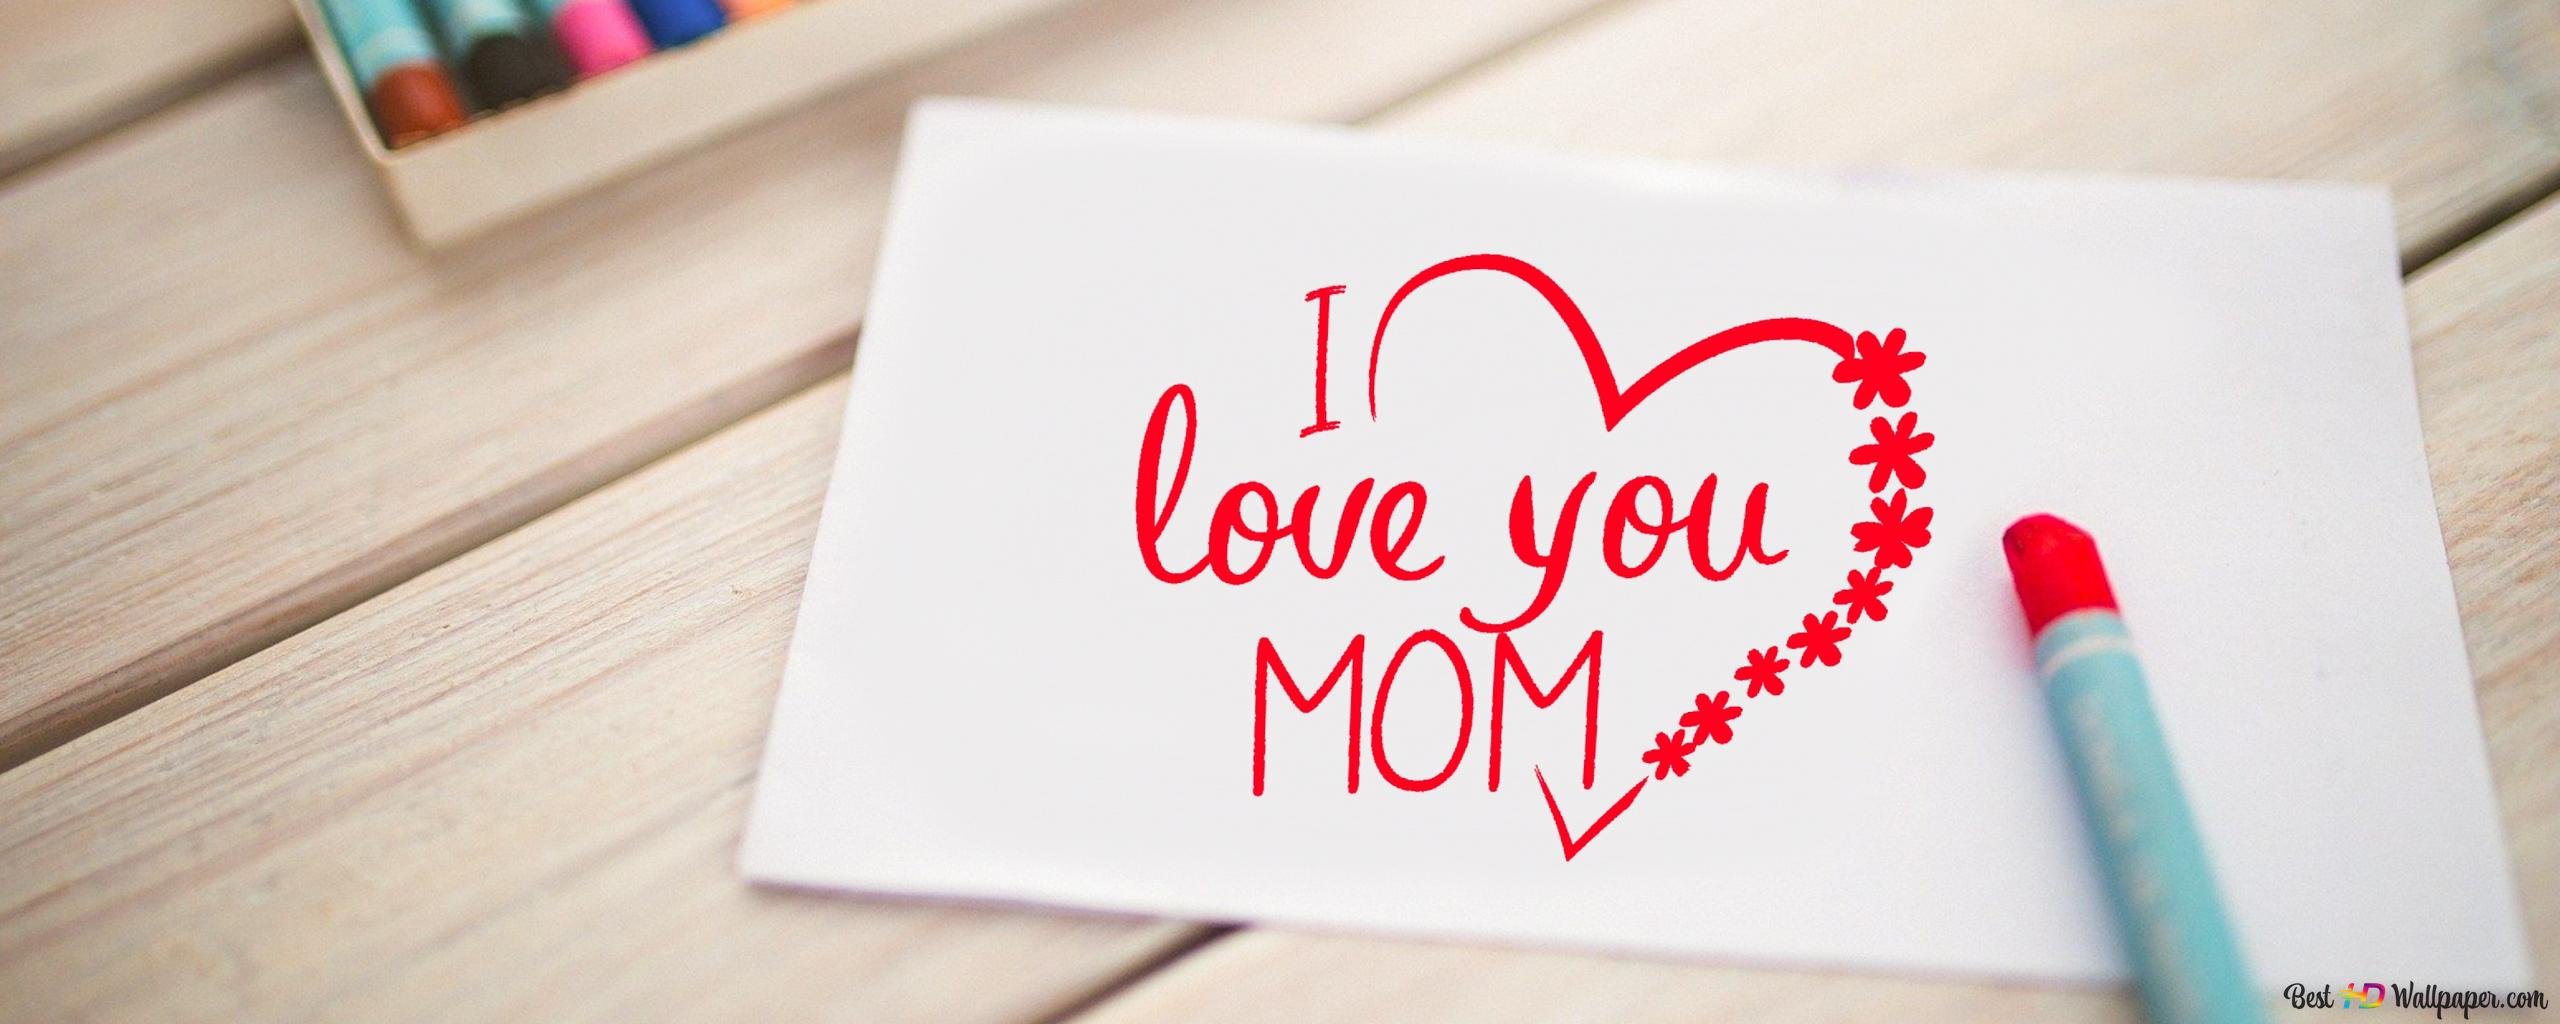 Телефон мамы на английском. Мама, я тебя люблю!. Обои мама я тебя люблю. Мамочка я тебя люблю. Мама я тебя люблю письмо.